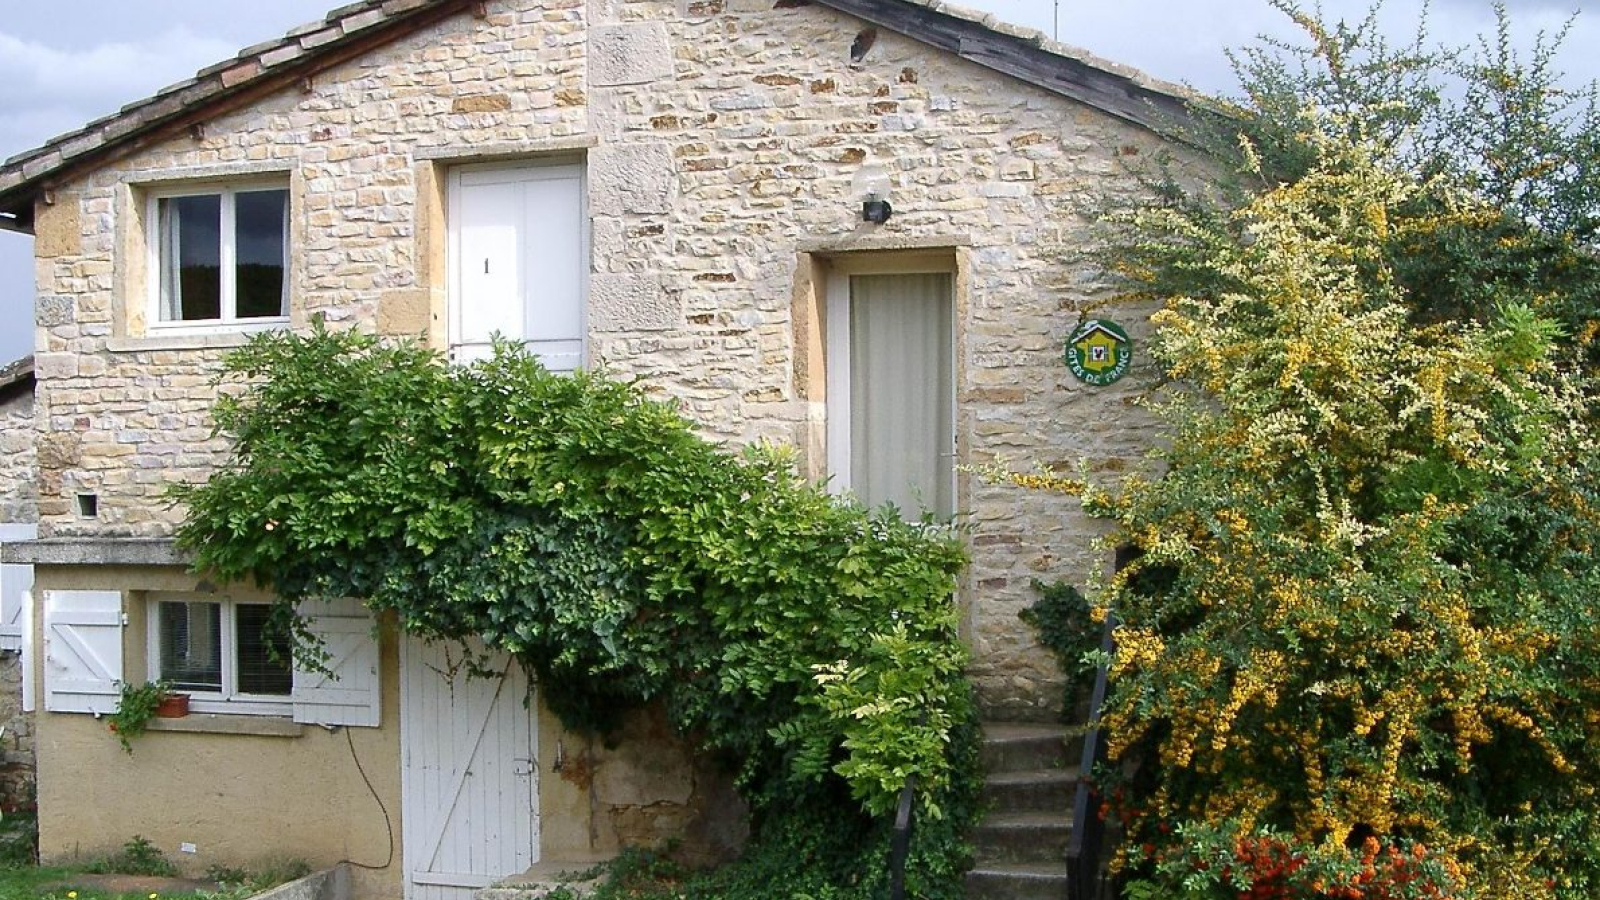 Le 'Domaine Albert' : 3 Gîtes et 3 Chambres d'Hôtes à Pommiers dans le Beaujolais - Rhône.